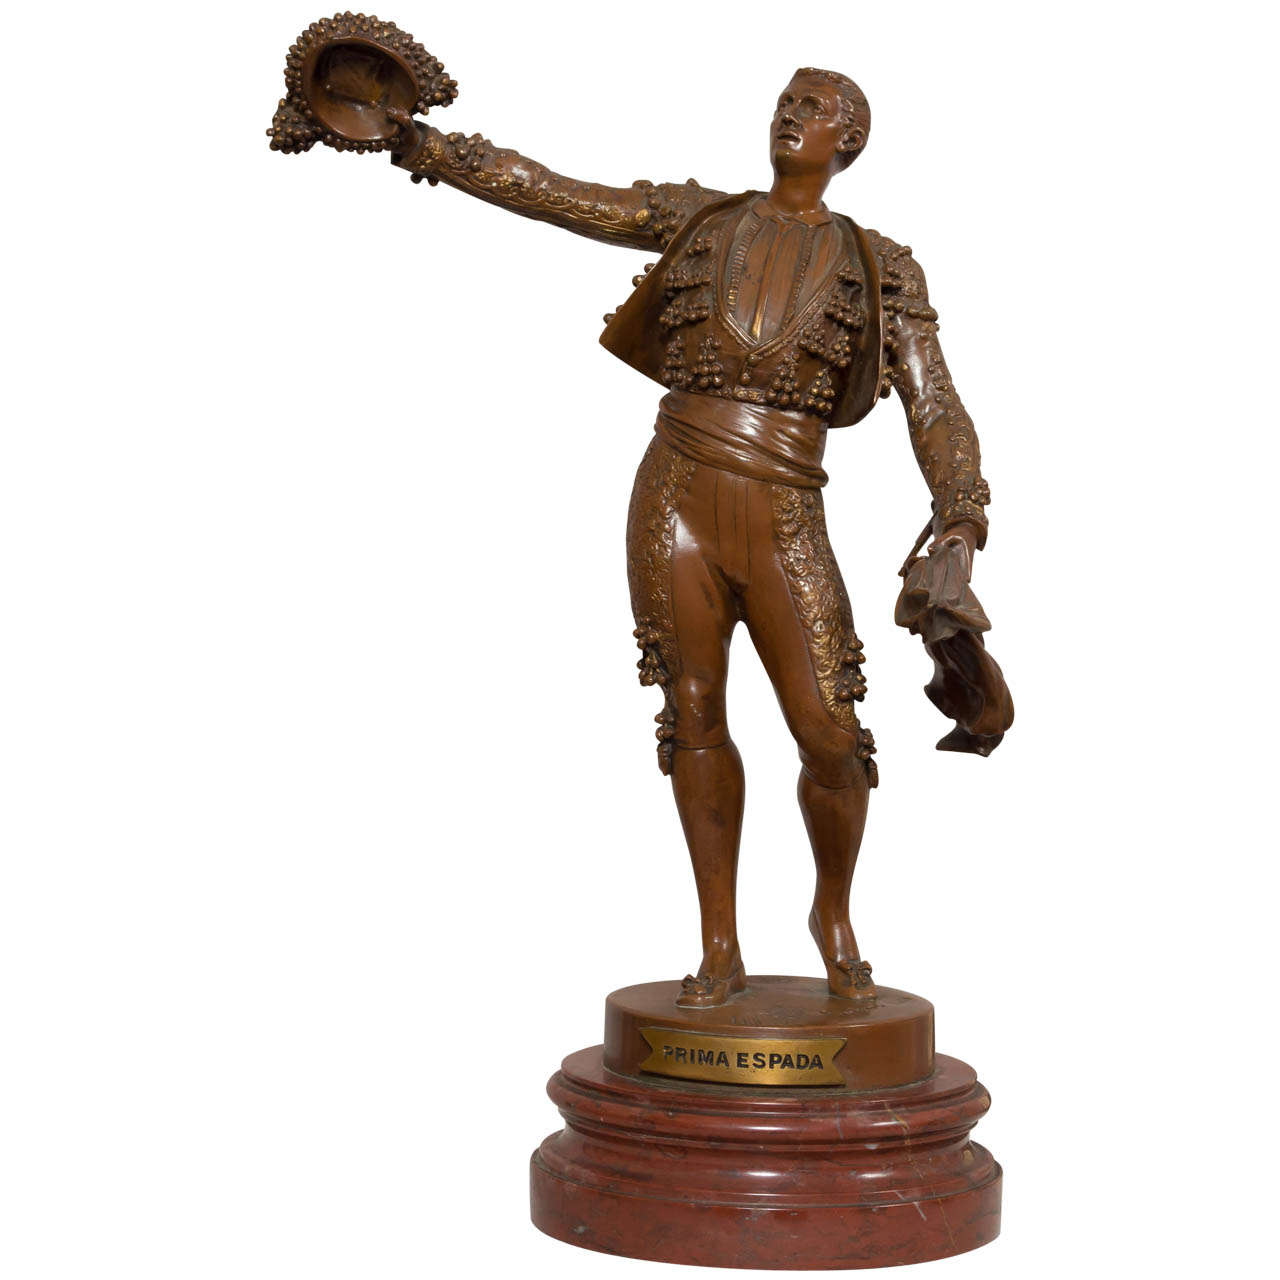 Highly Detailed Bronze Figure of a Matador